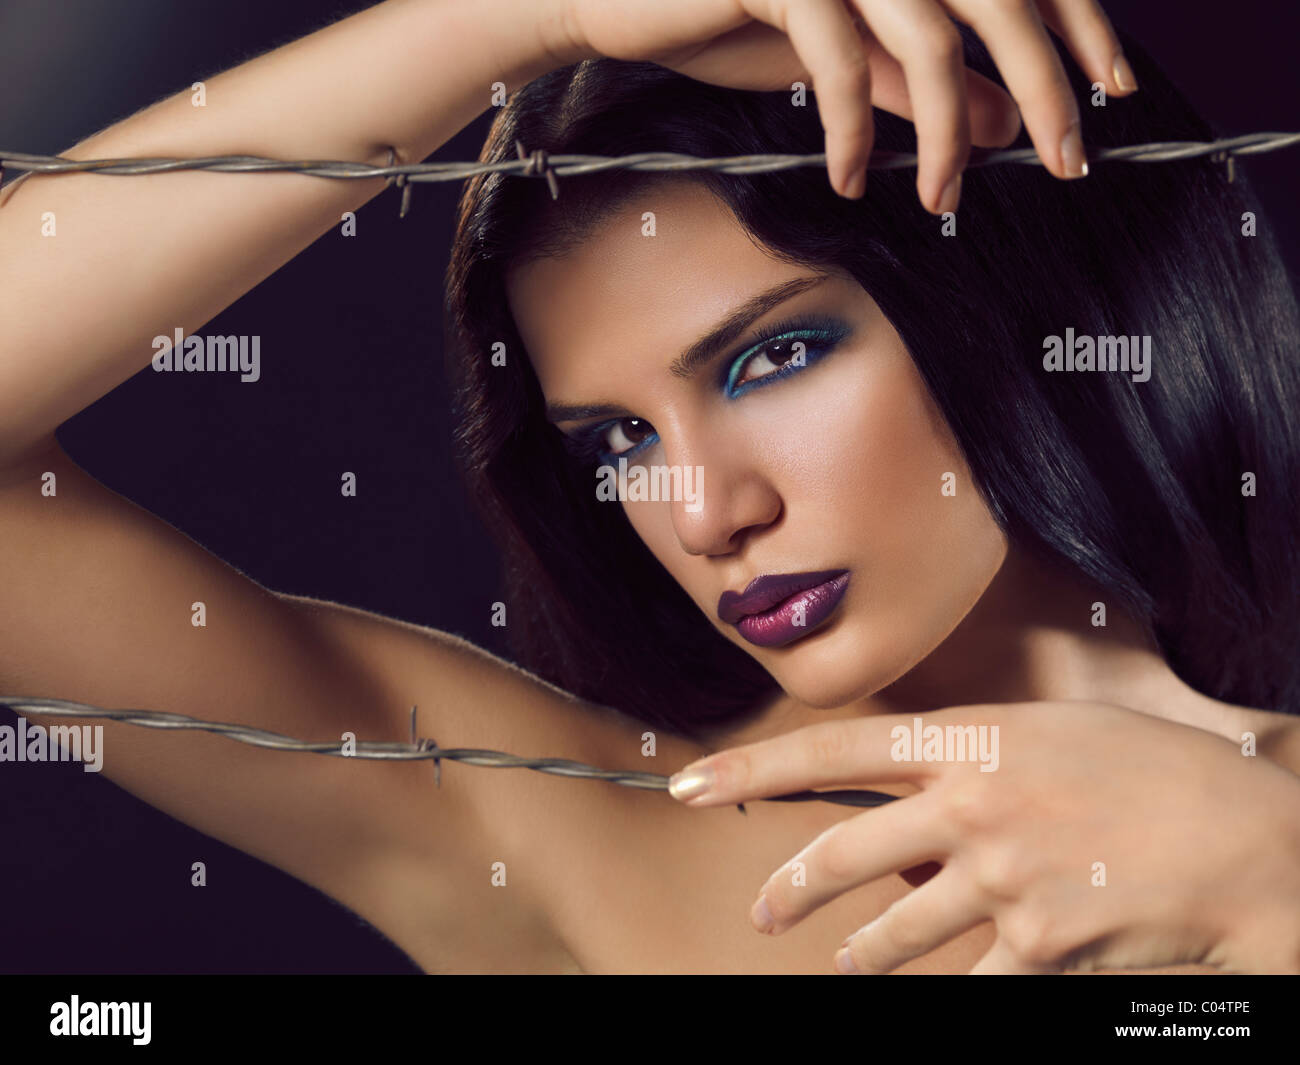 Artistico bellezza espressiva ritratto di una giovane donna bella dietro il filo spinato Foto Stock